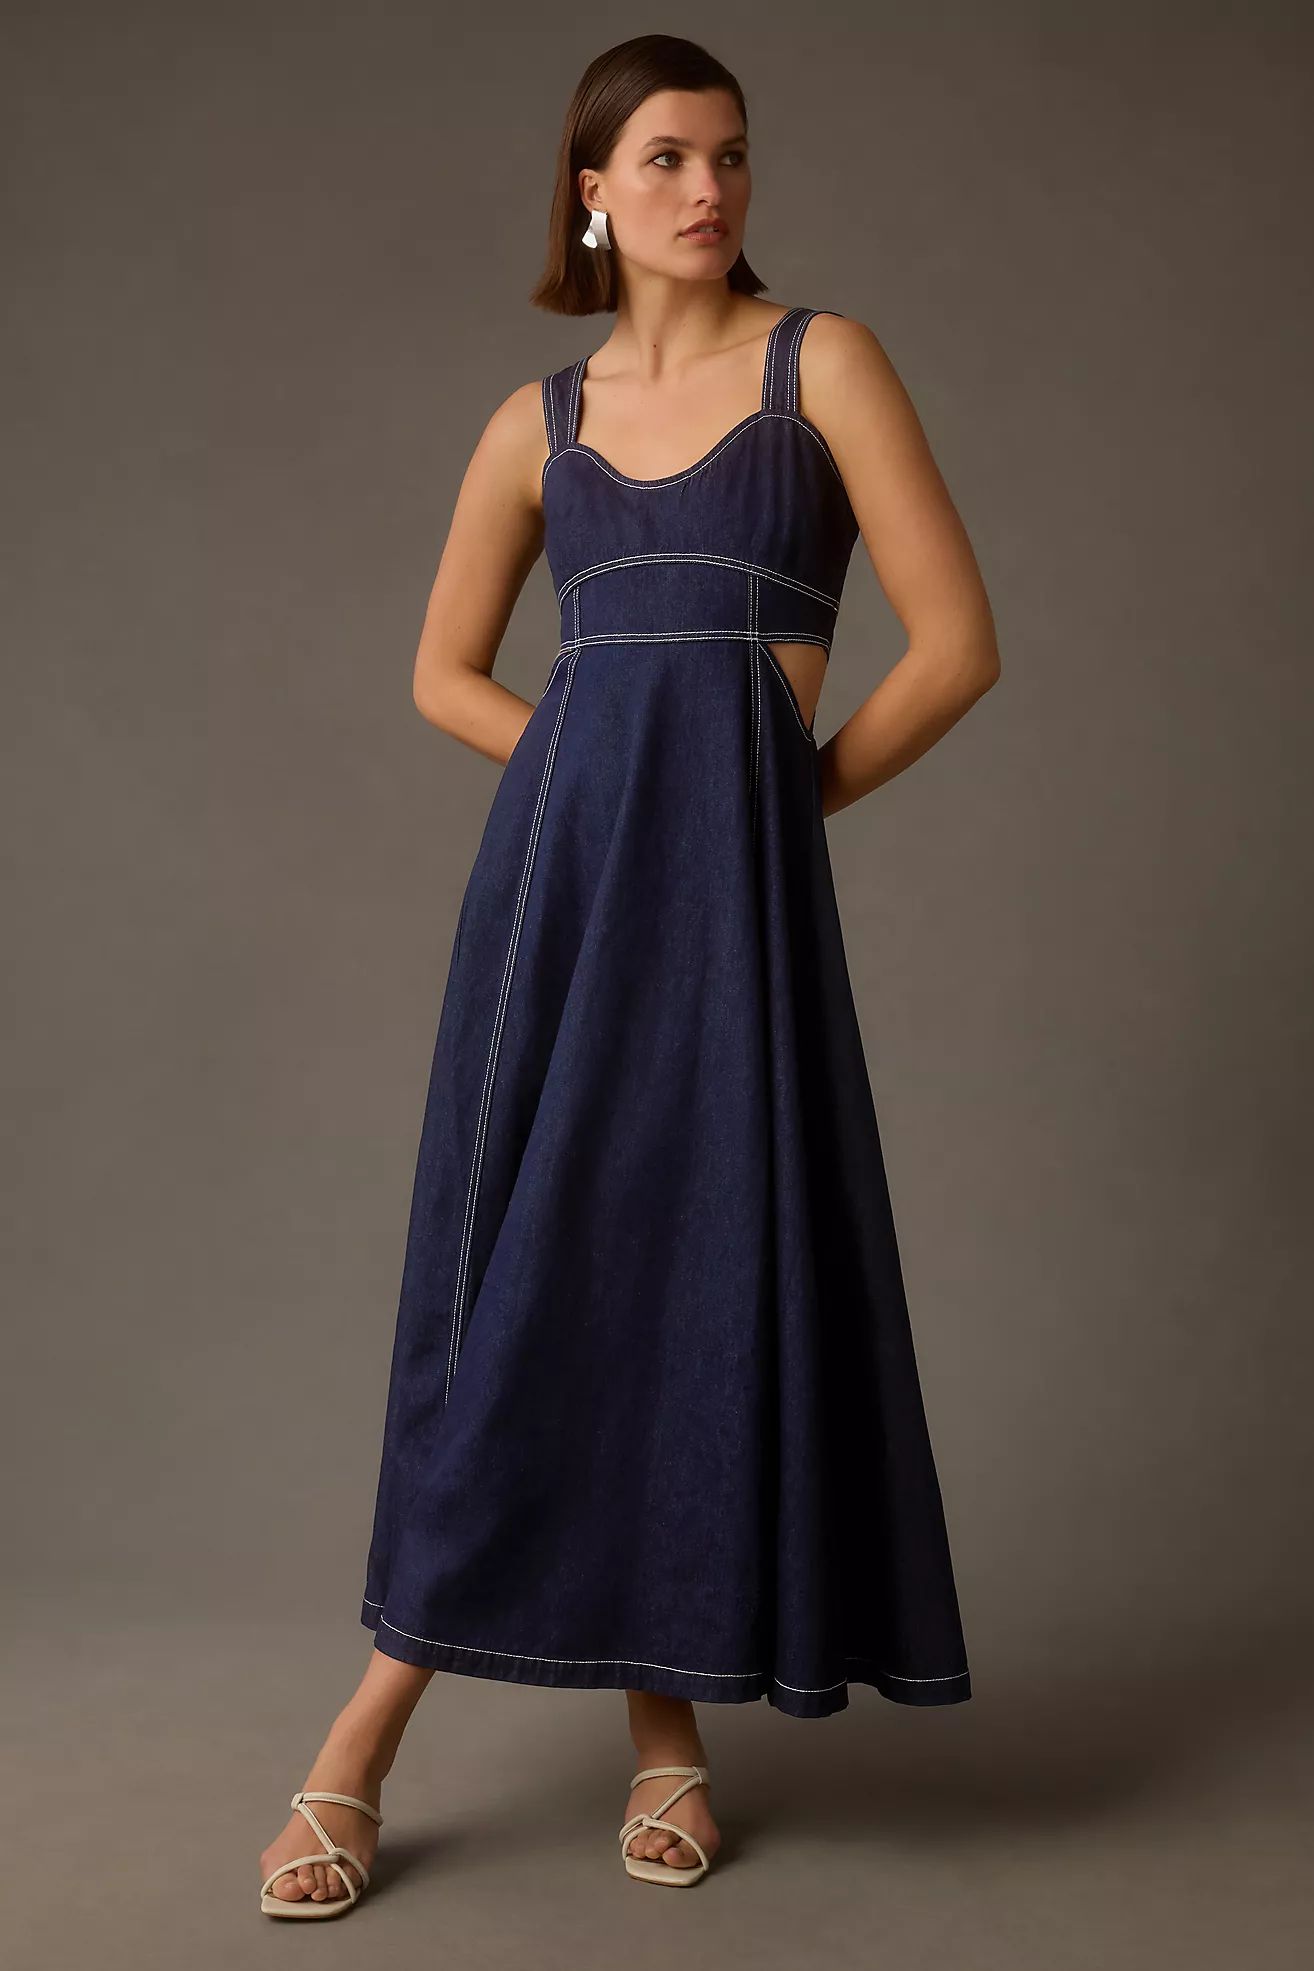 Aureta Studio Corset Denim Cutout Dress | Anthropologie (US)